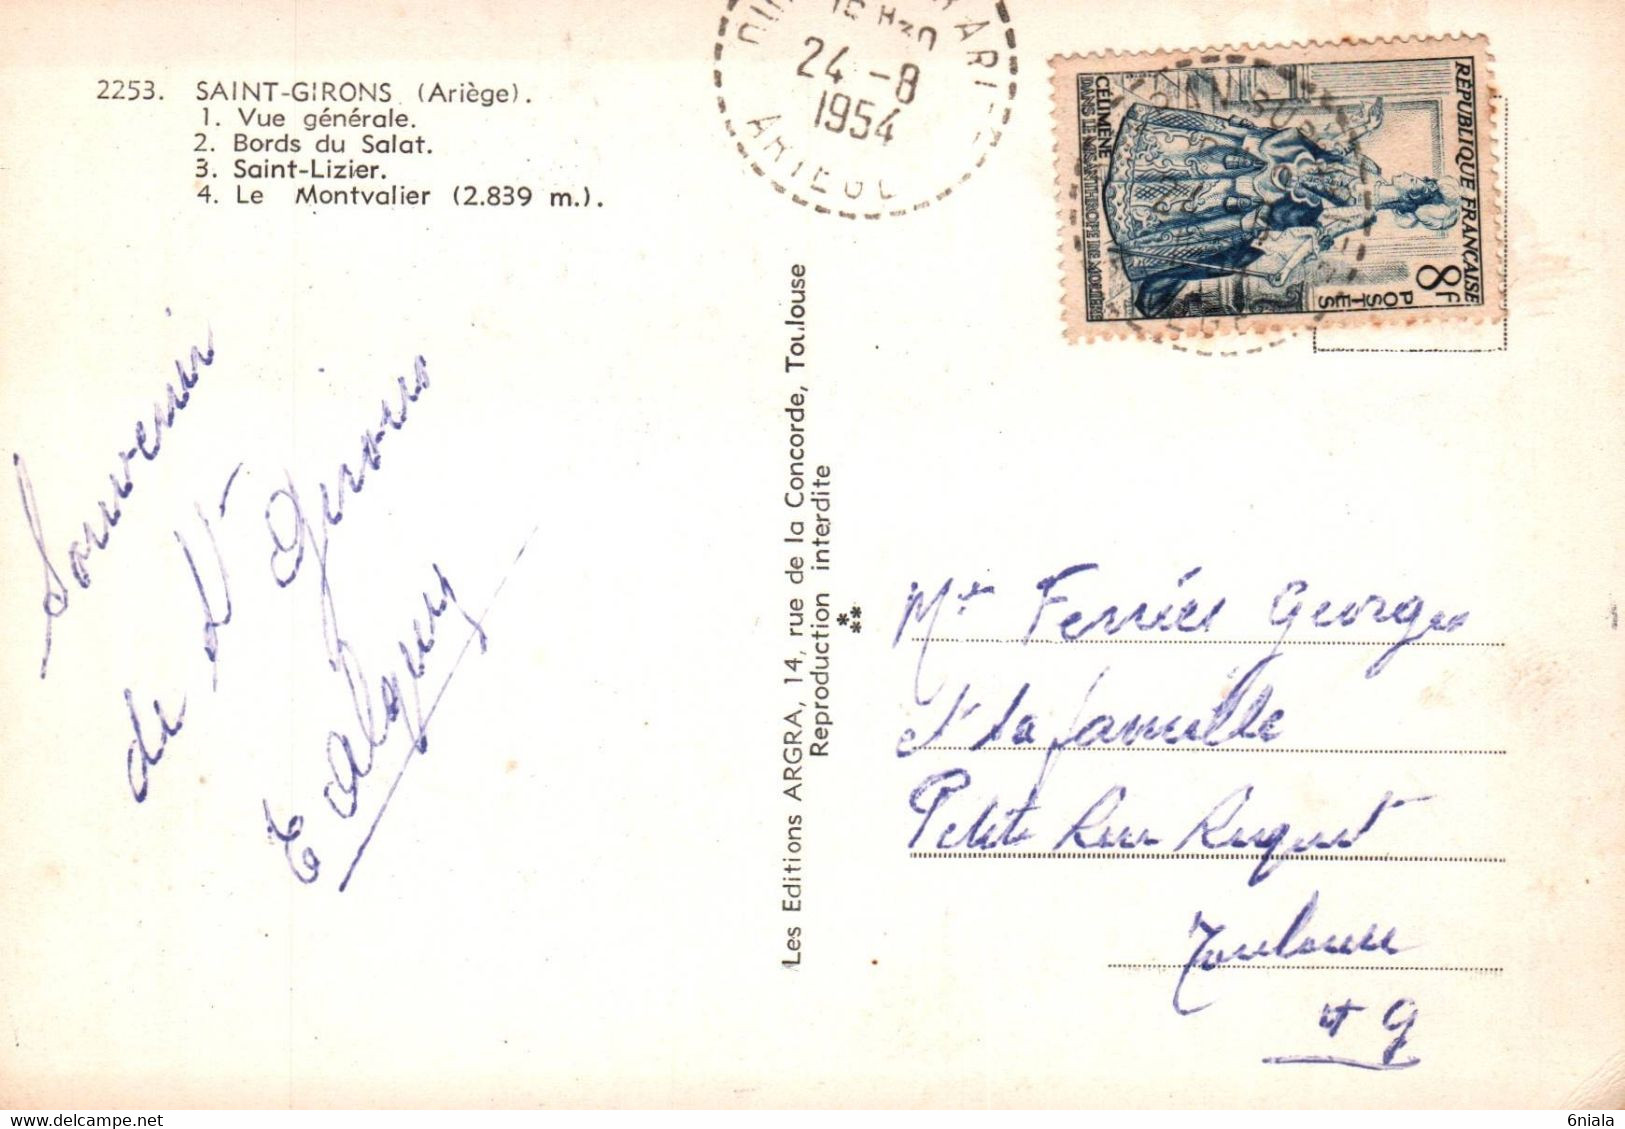 5115 Carte Postale   SAINT GIRONS Massif Montvalier Saint Lizier Les Bords Du Salat, Bethmalaise   09 Ariège - Saint Girons